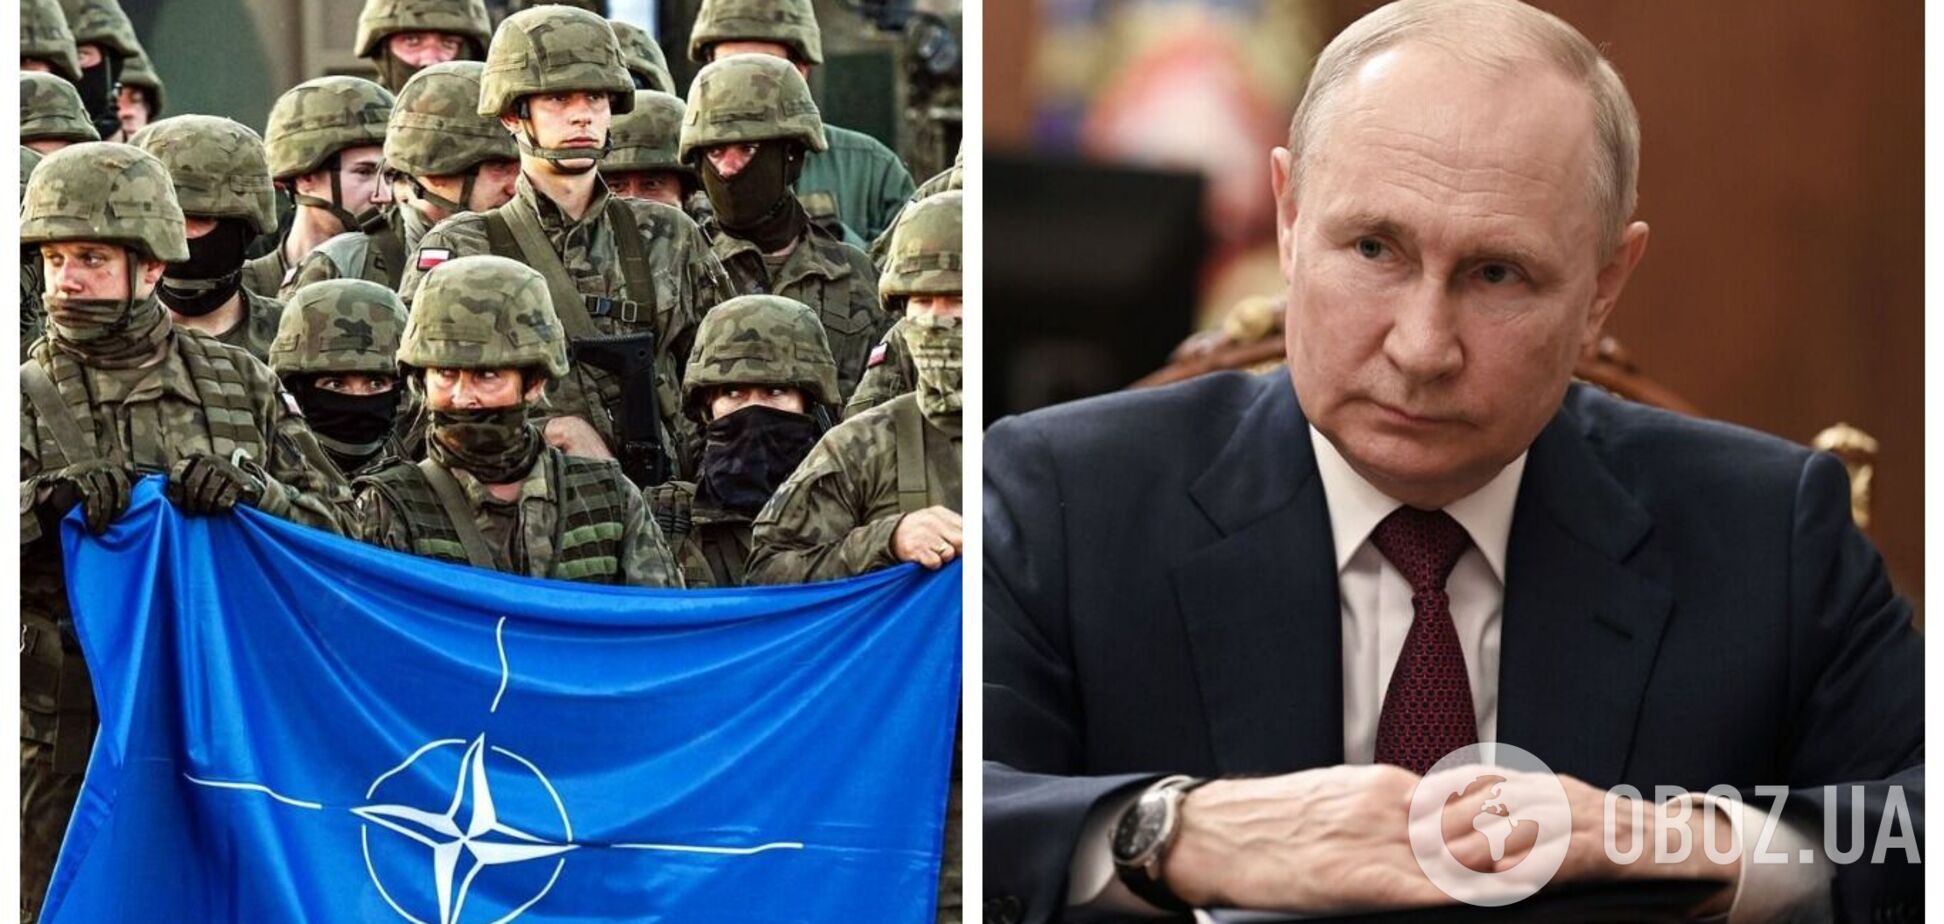 'Ми пам'ятаємо': Путін пригрозив 'трагічними наслідками' у разі введення Заходом військових контингентів в Україну